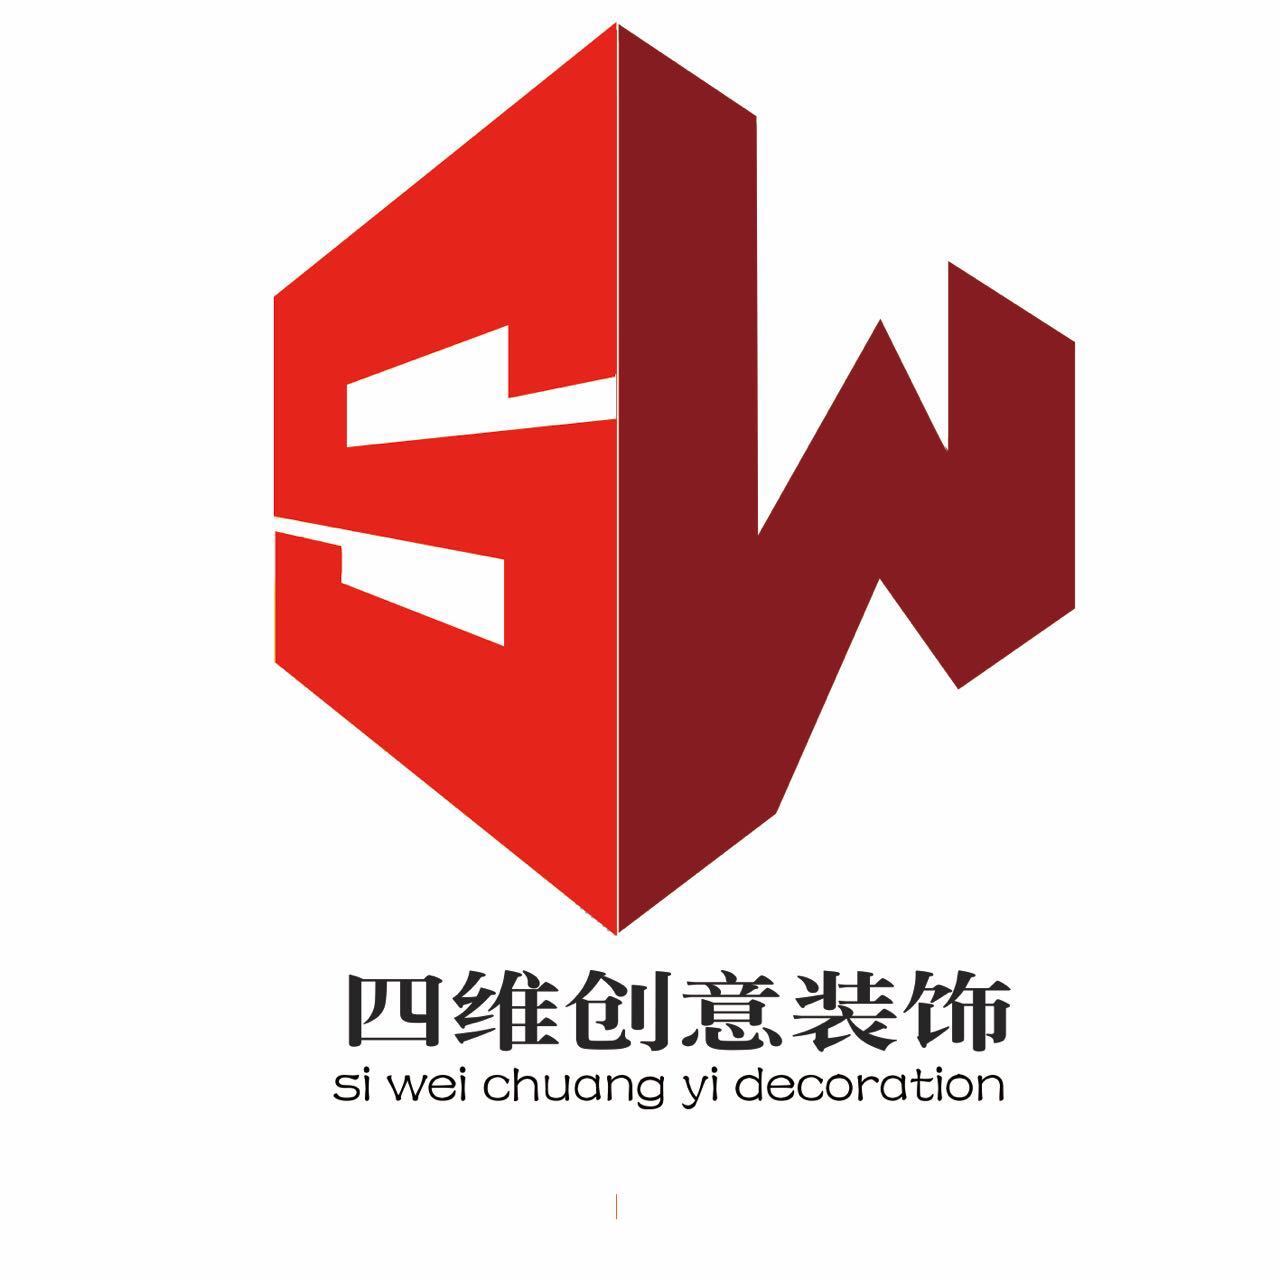 创意建筑装饰工程有限公司成立于2008年,总部设在河北省省会石家庄